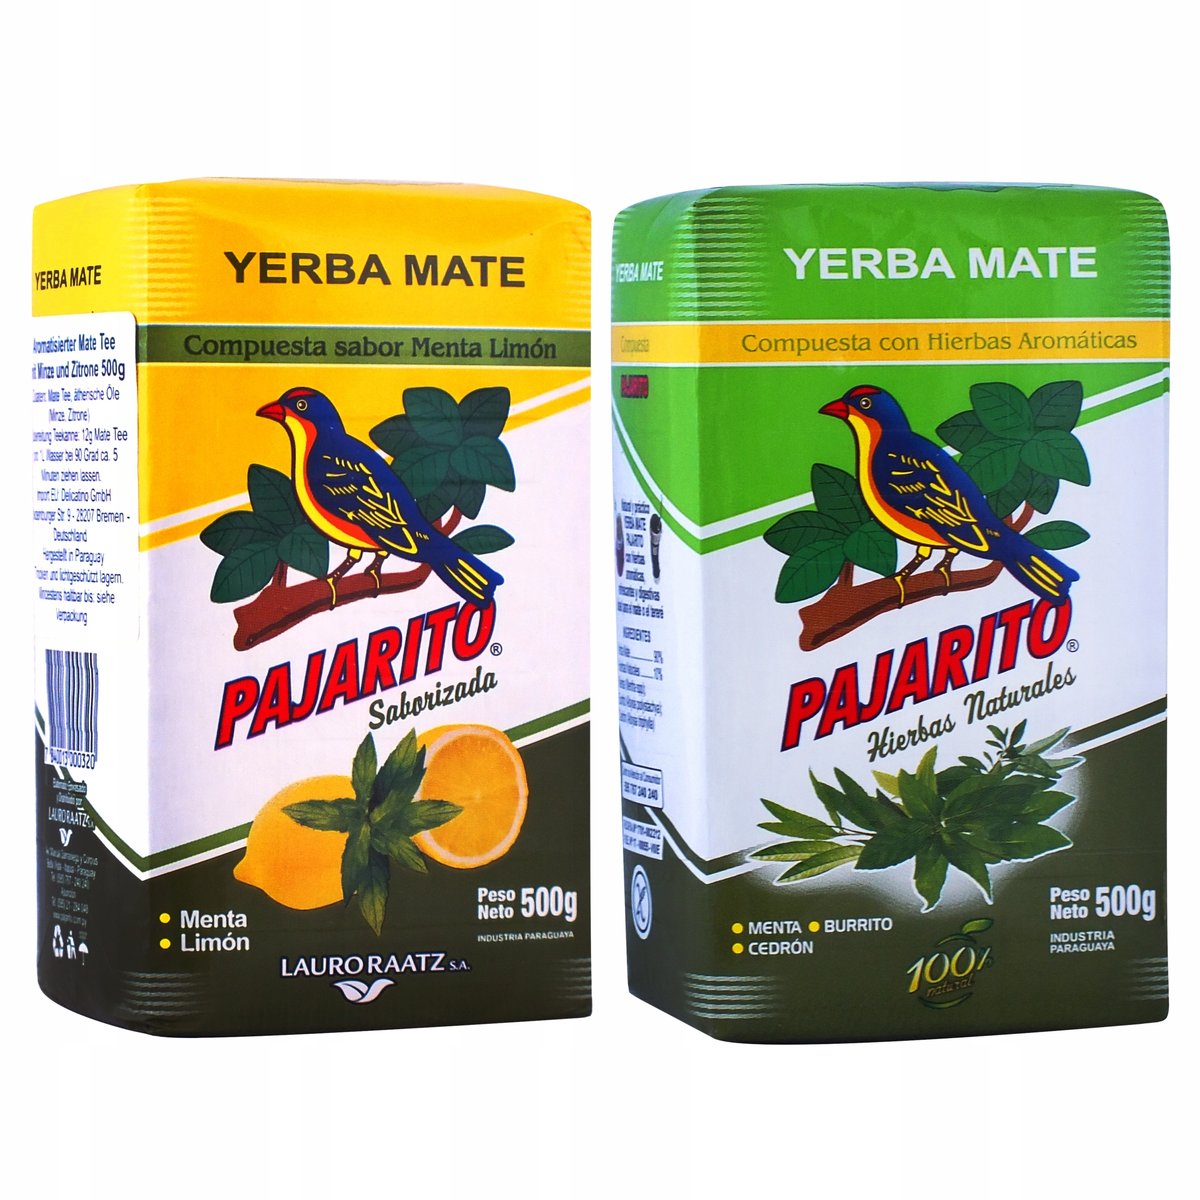 Yerba Mate Pajarito Limon + Hierbas 2 x 500g 1kg